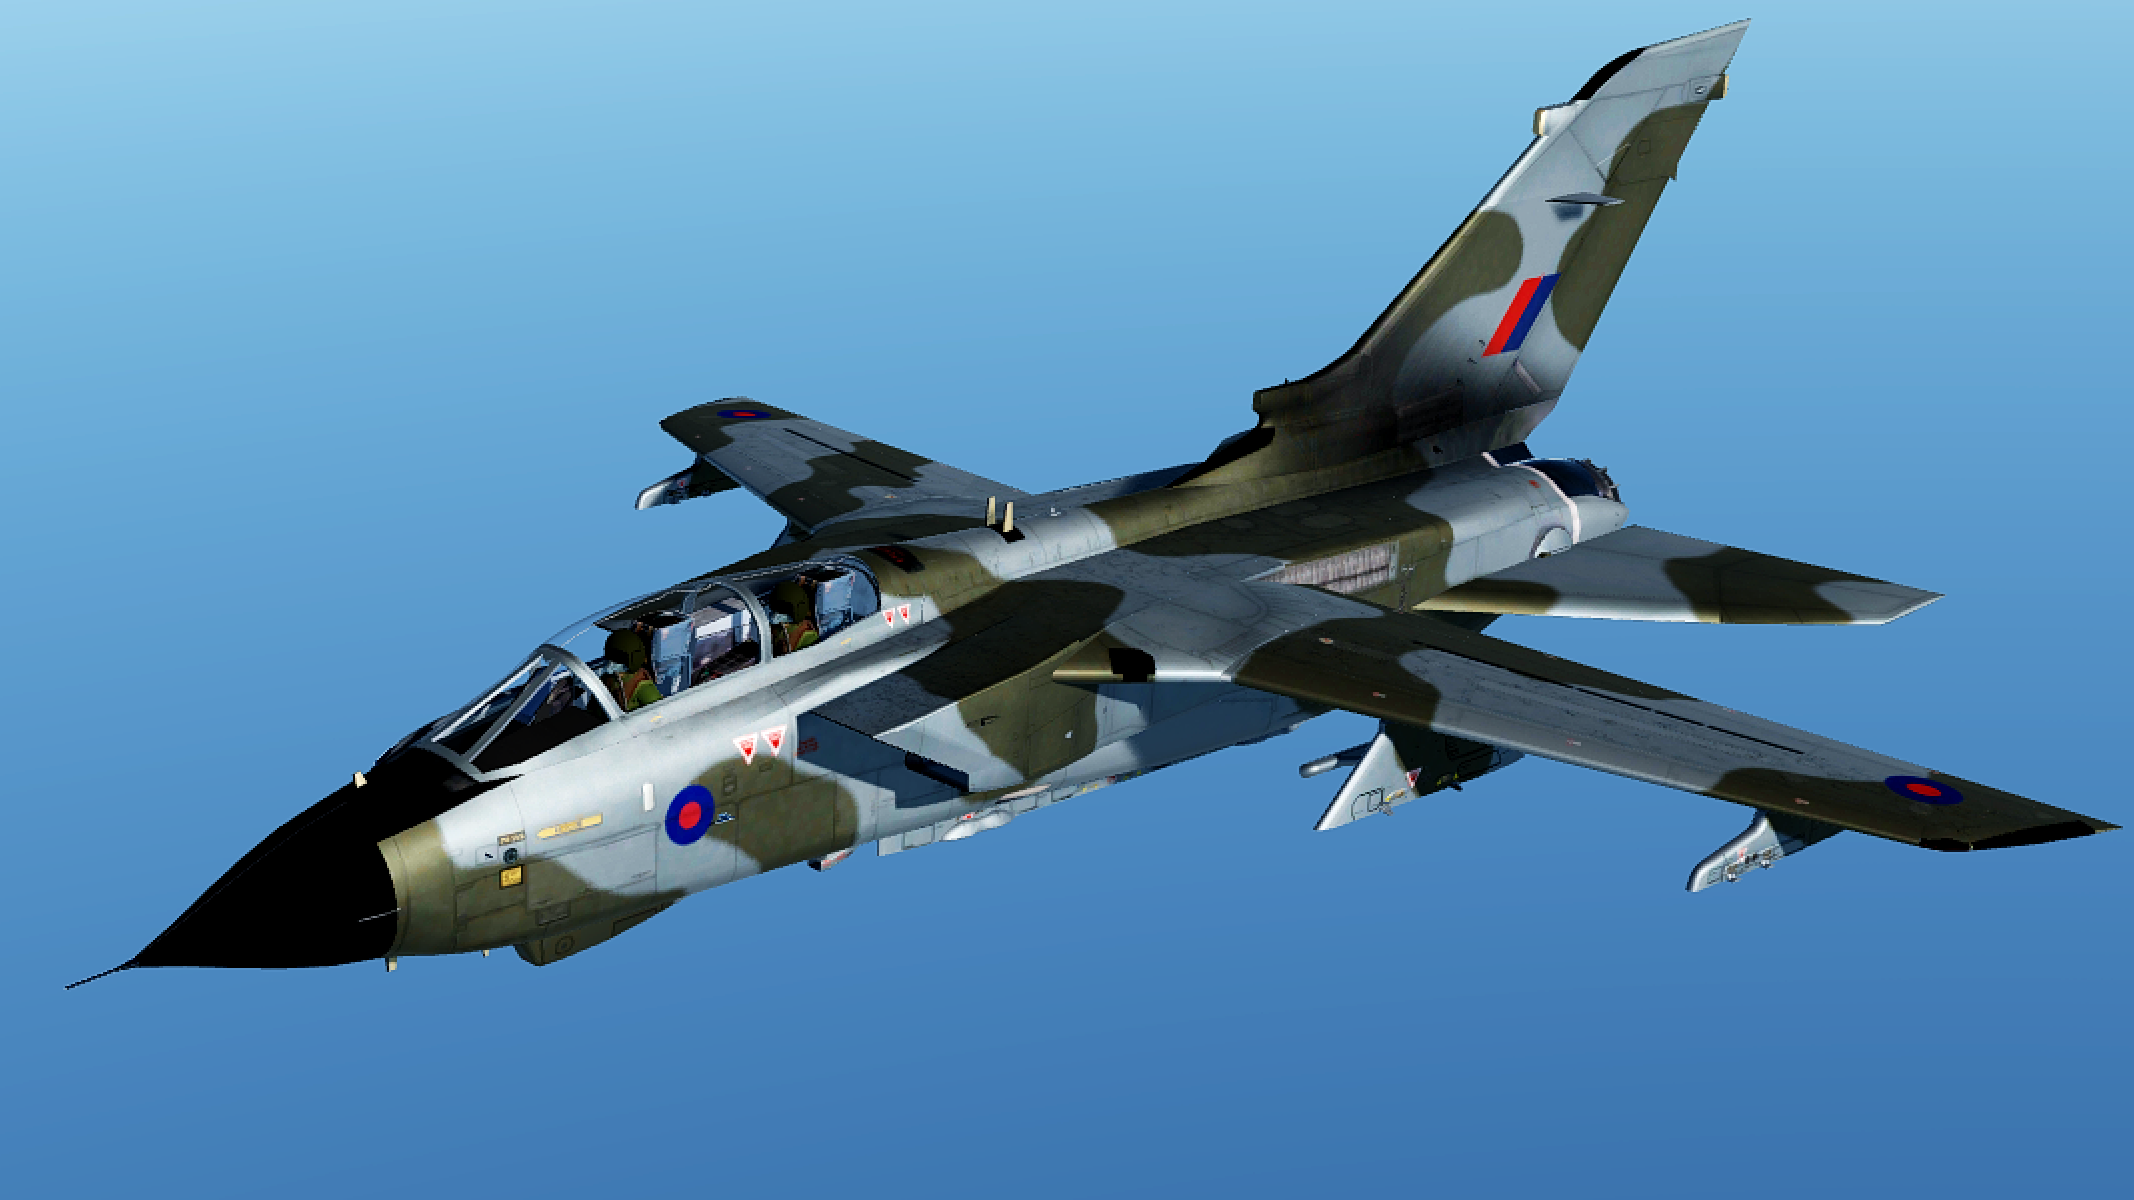 RAF Tornado GR4 Camo and Desert Storm generic skins